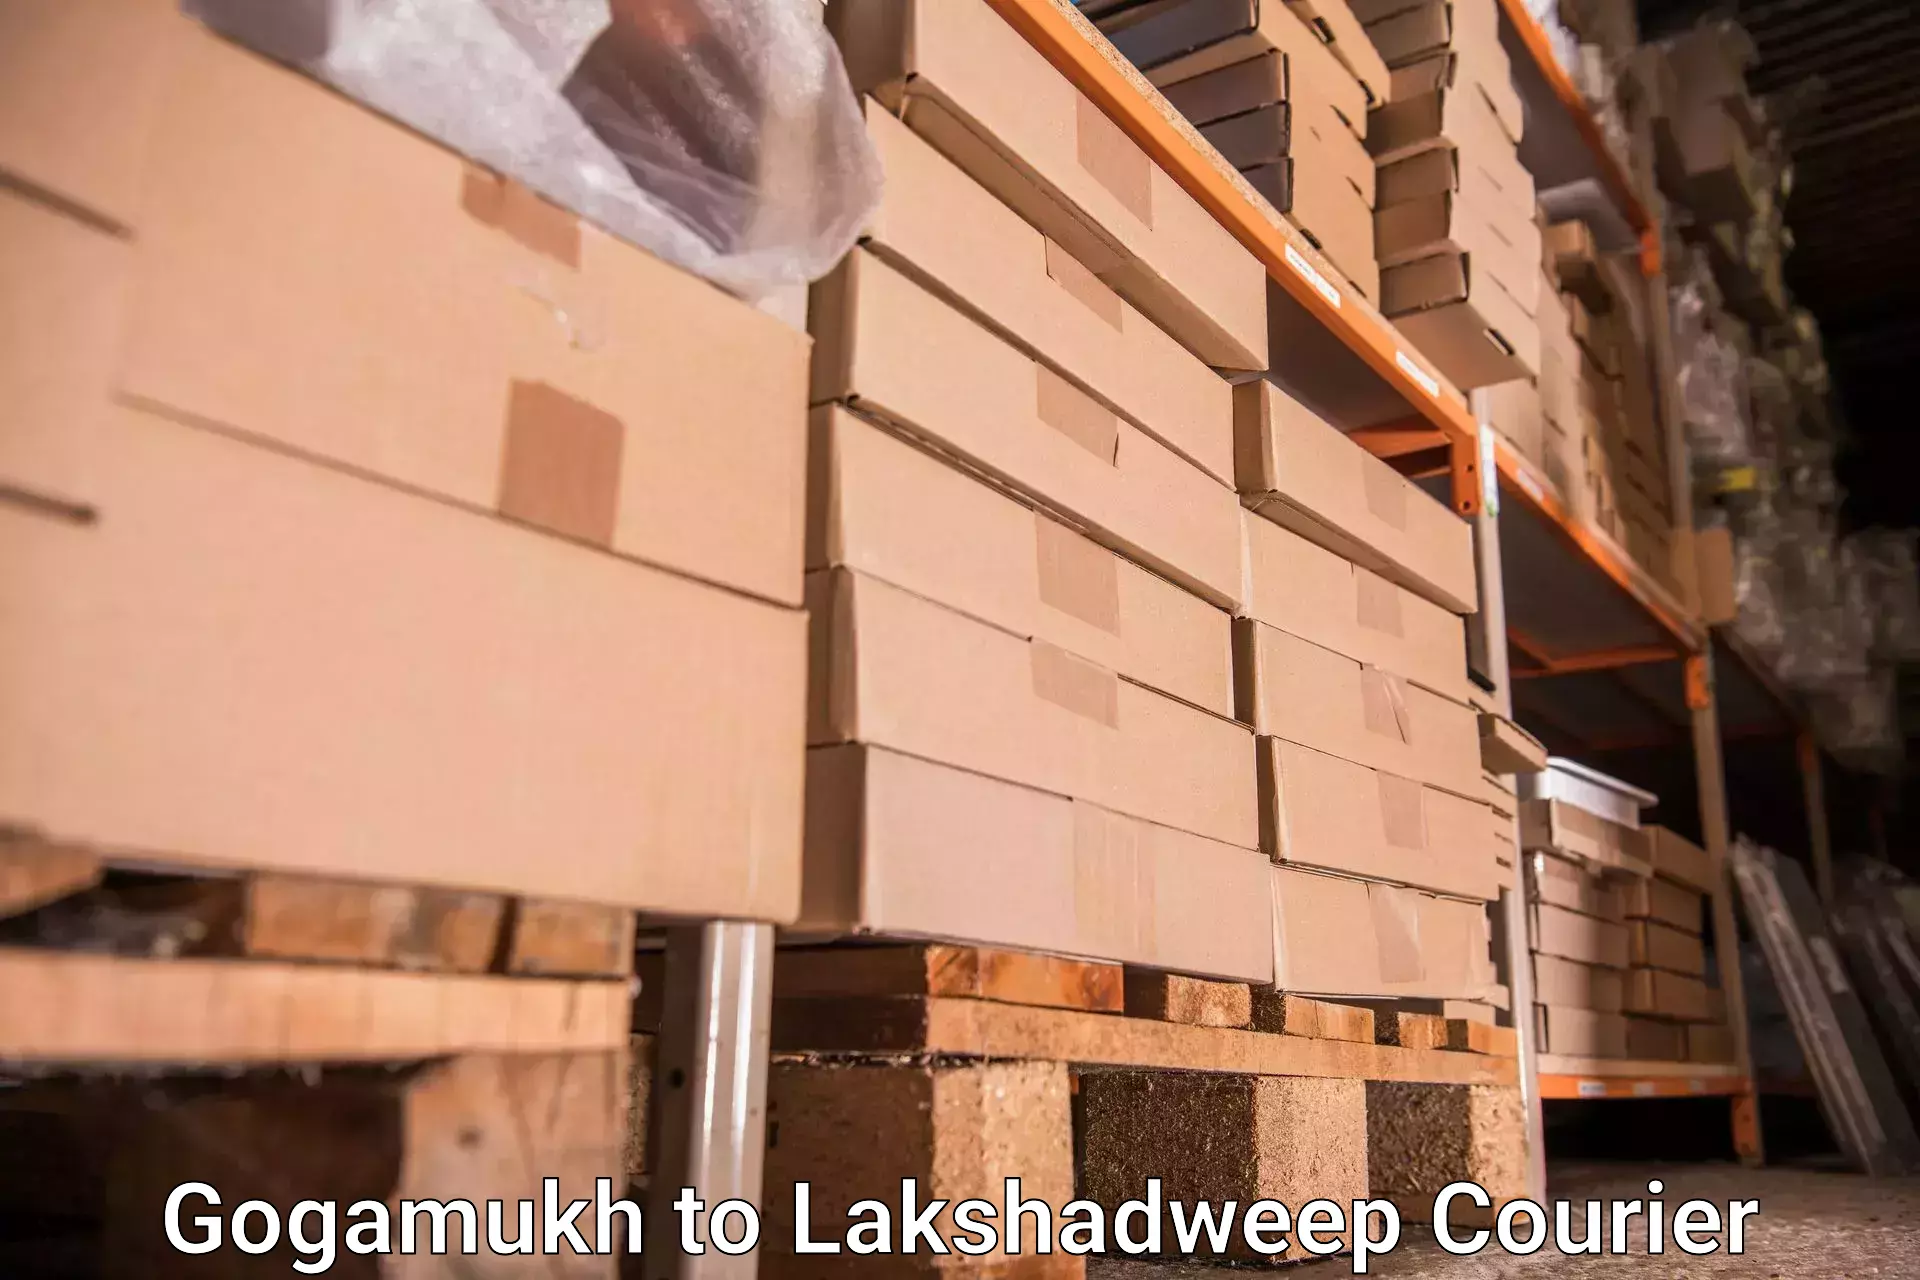 Luggage transport consulting Gogamukh to Lakshadweep